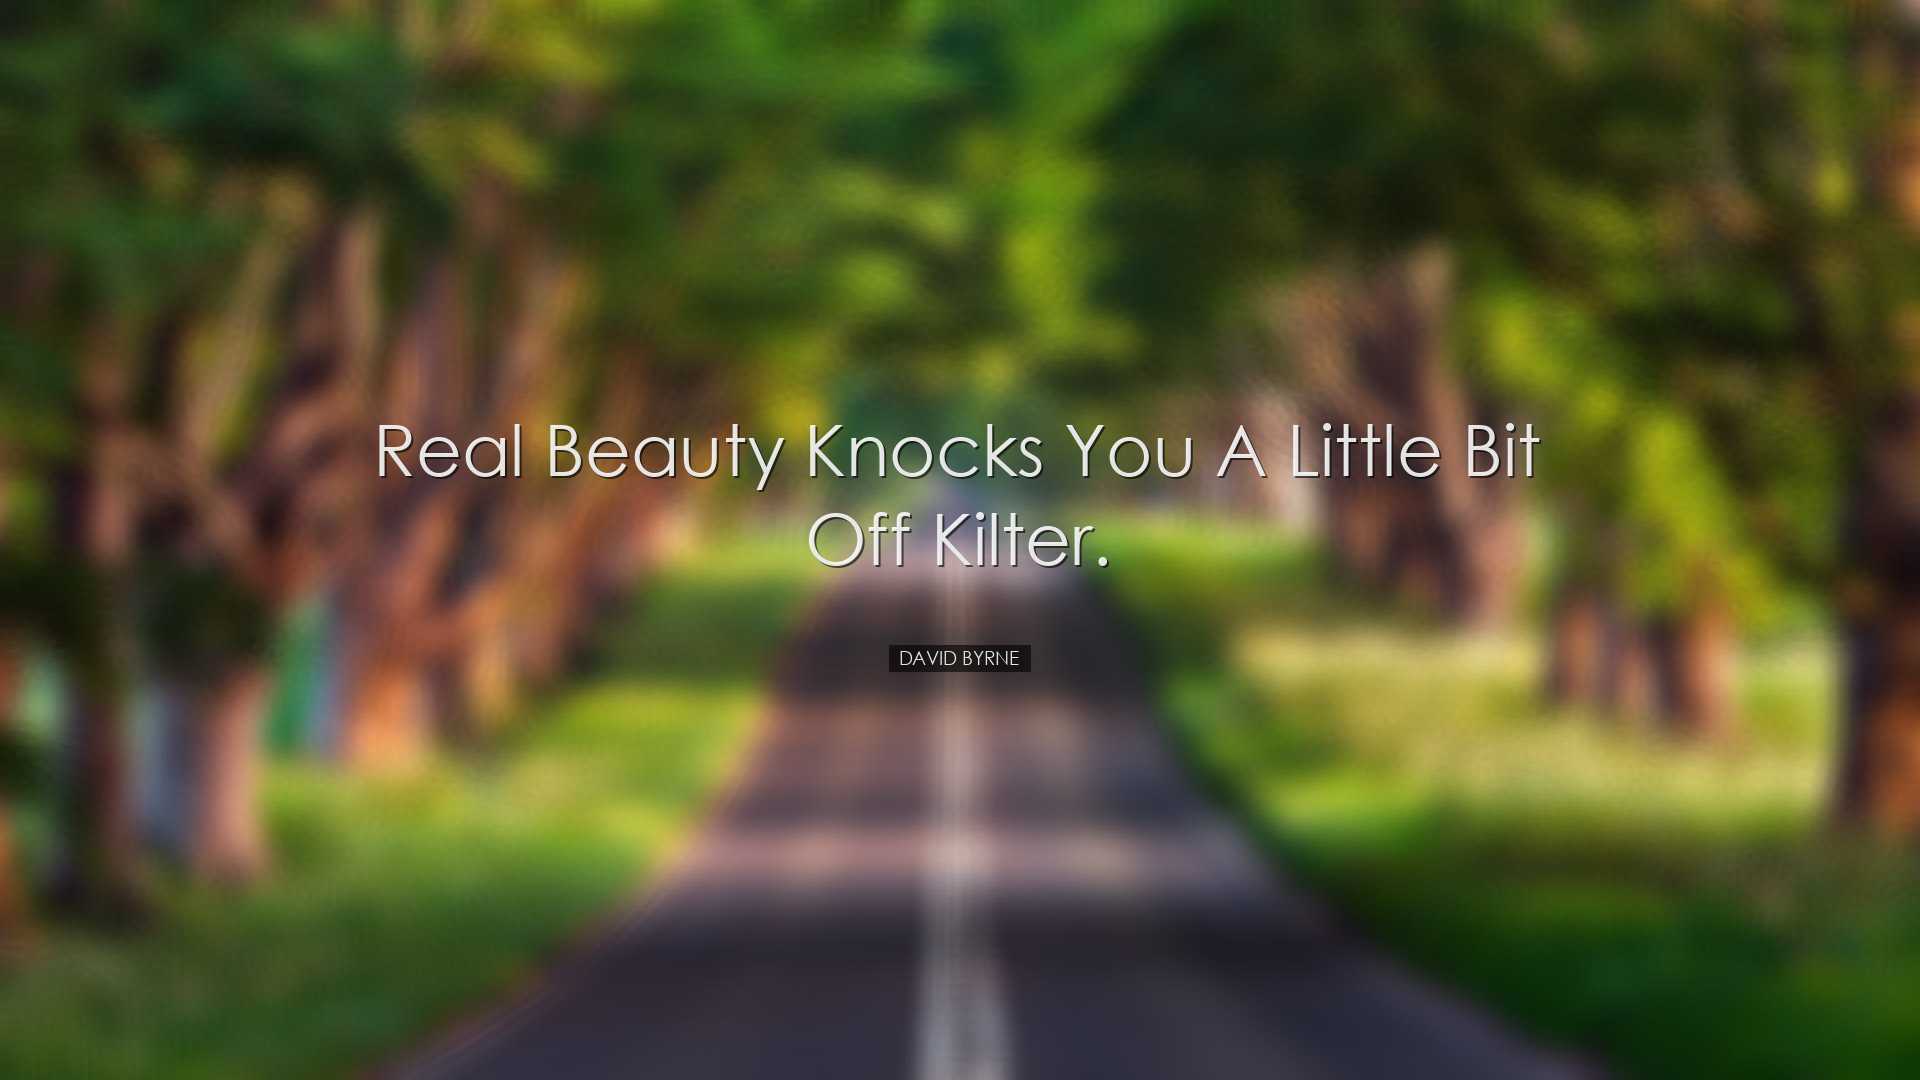 Real beauty knocks you a little bit off kilter. - David Byrne